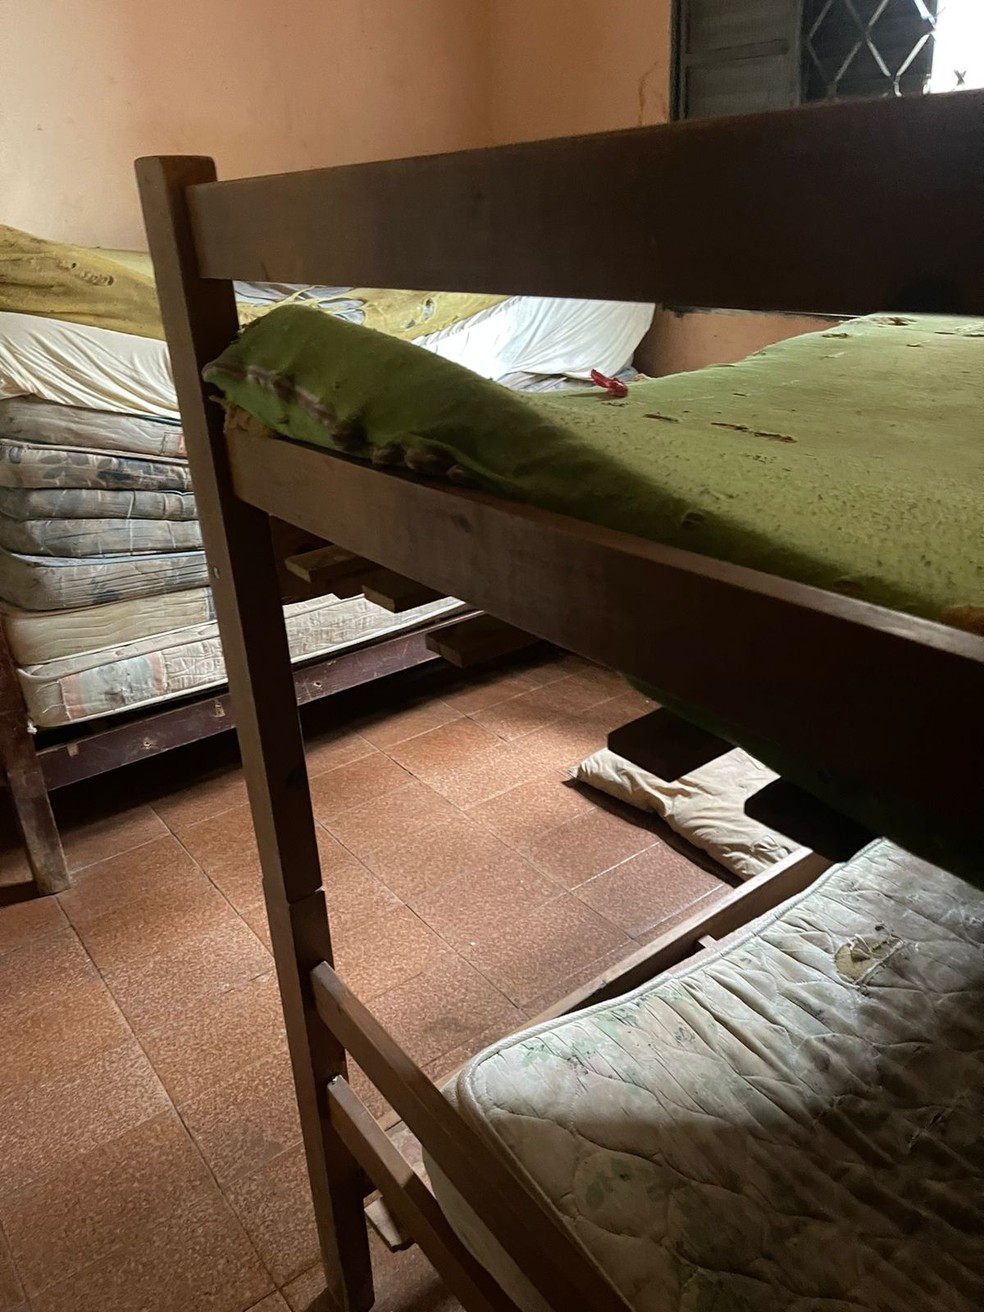 Quarto onde vivem travestis e transexuais que são vítimas de trabalho análogo à escravidão em Uberlândia — Foto: Michele Ferreira/g1